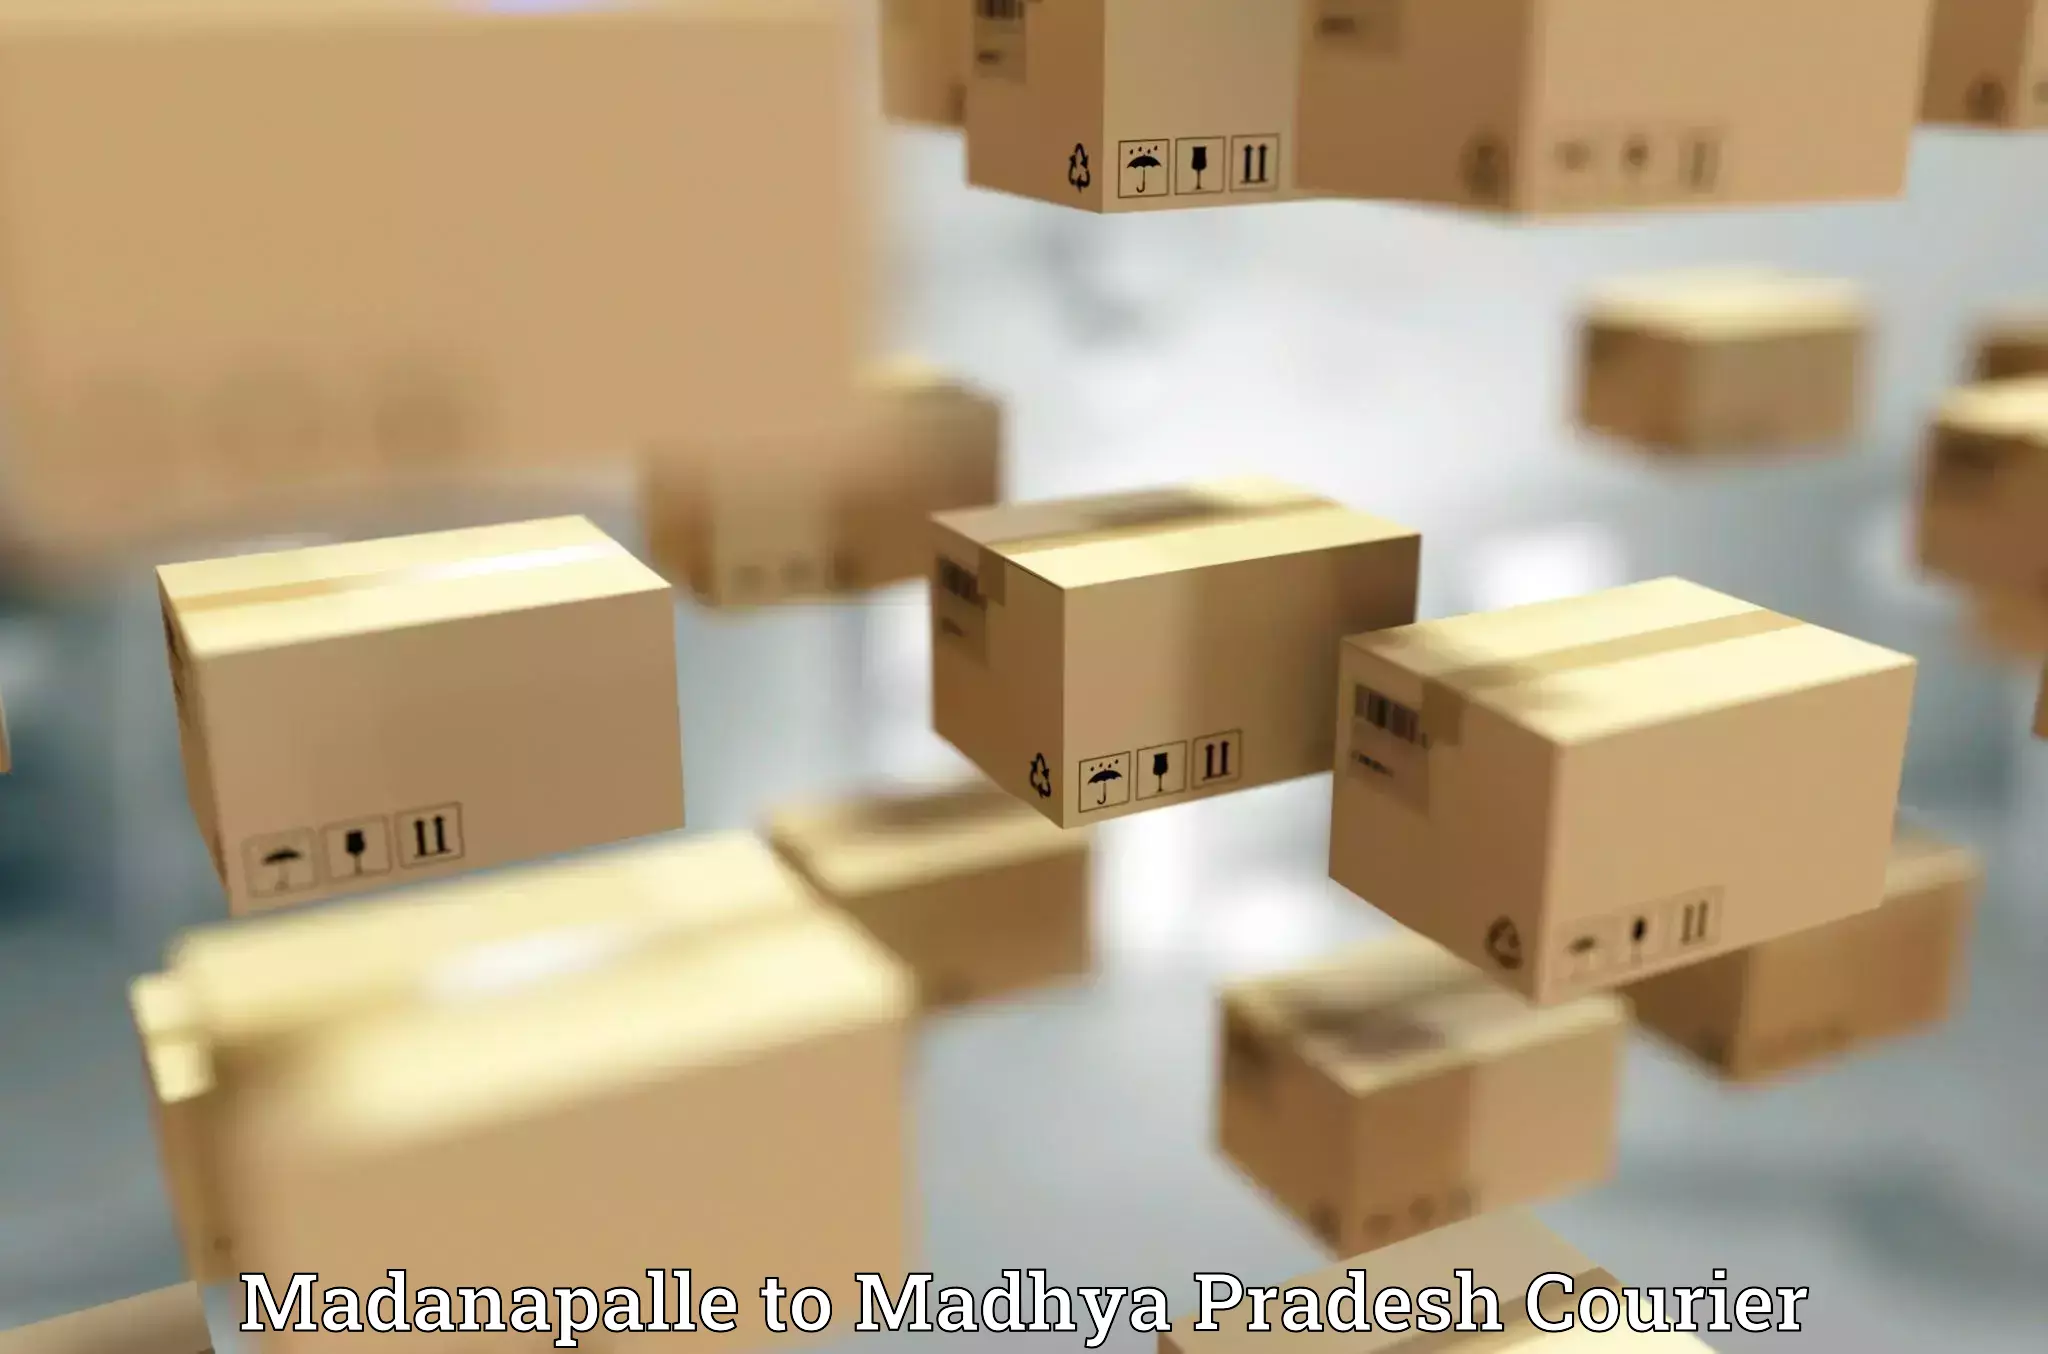 International parcel service Madanapalle to Garh Rewa